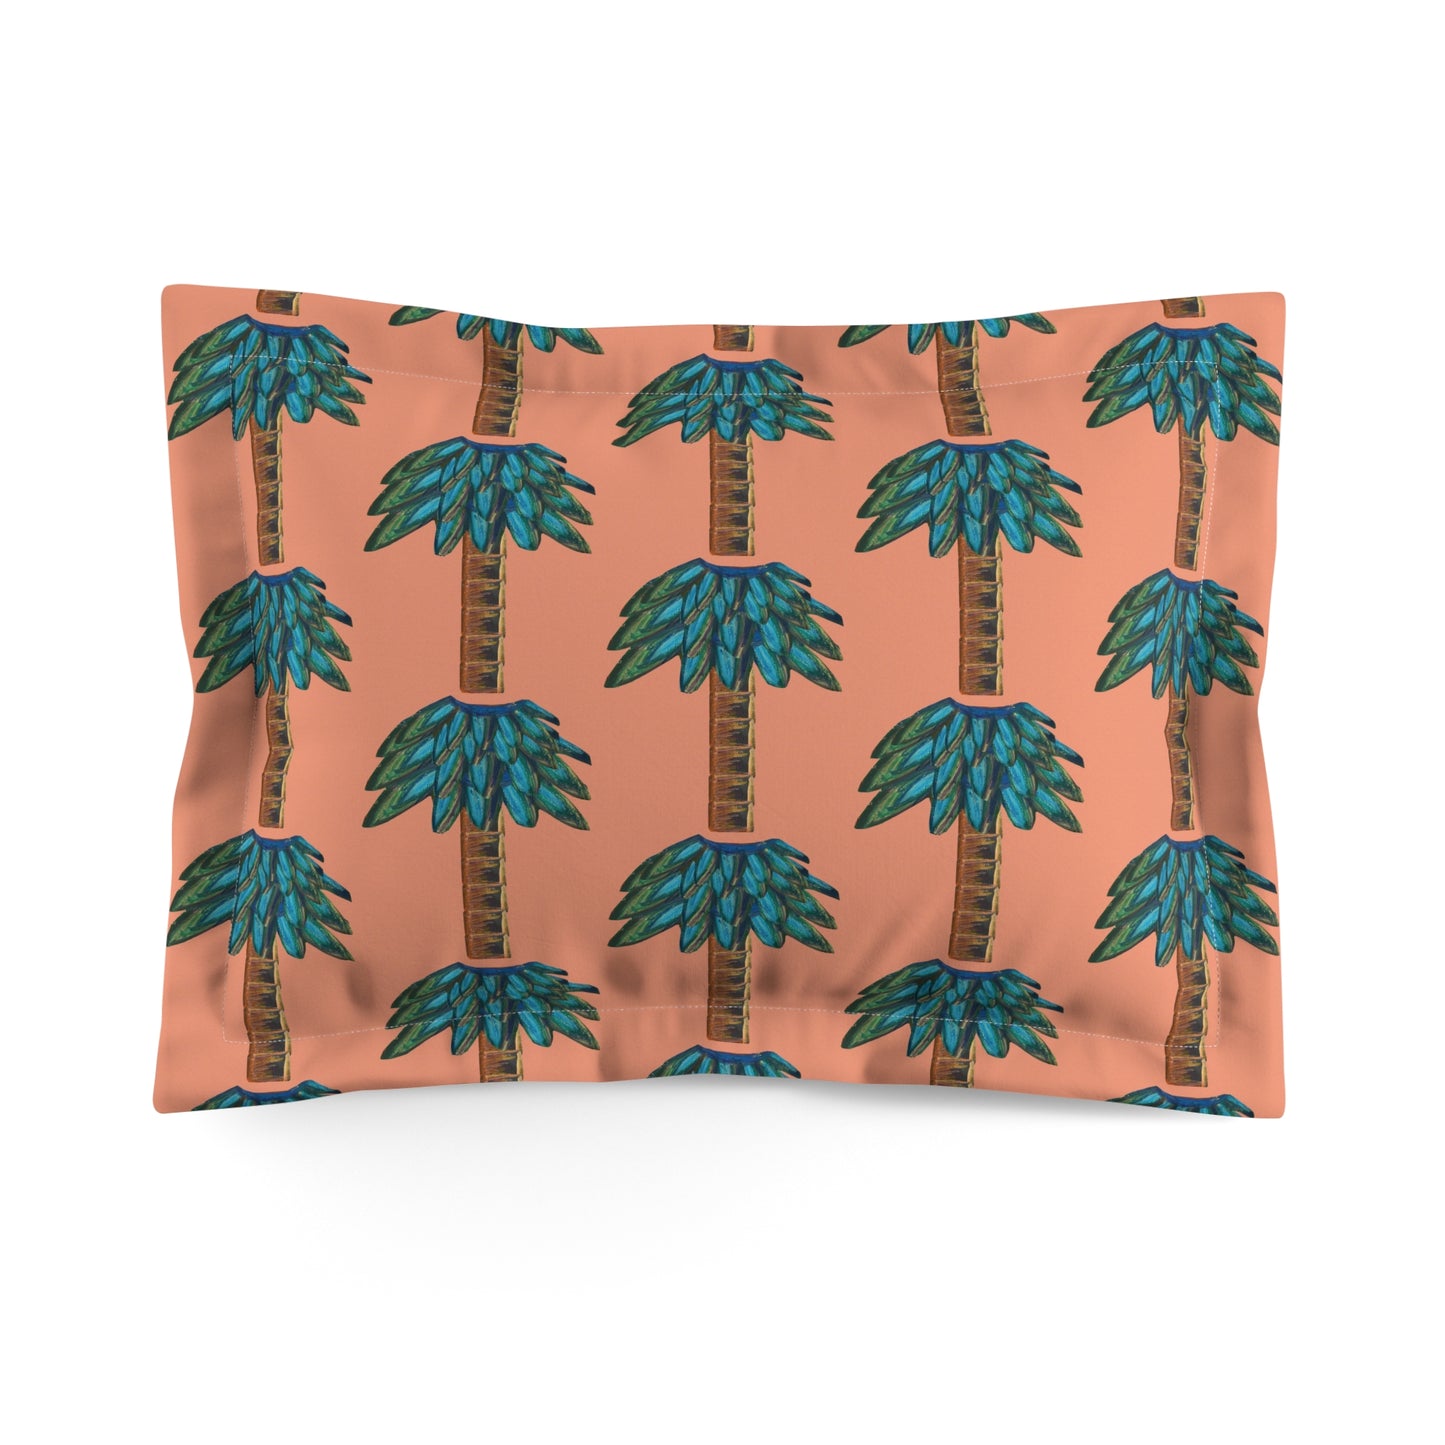 Tiki Palm Sherbet Pillow Sham